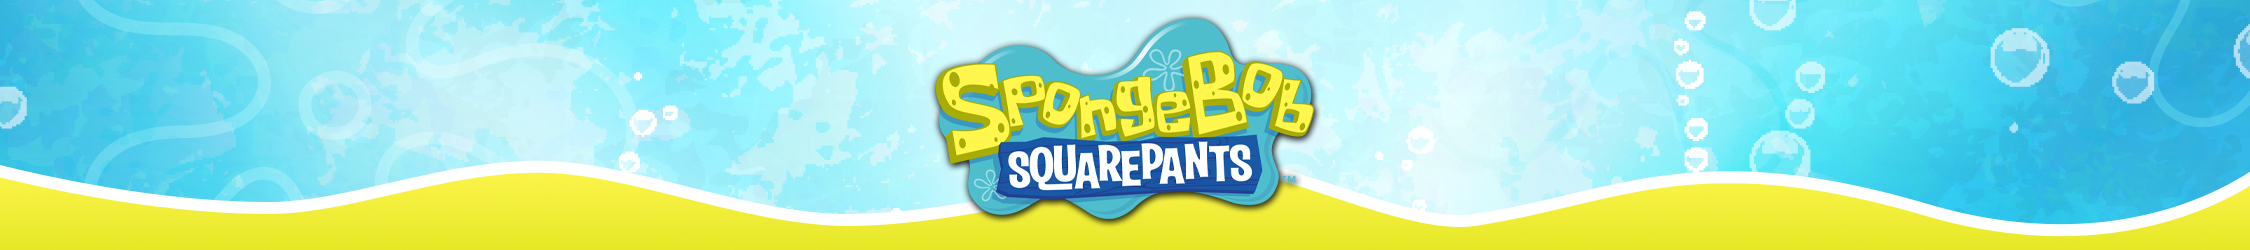 SpongebobTheme